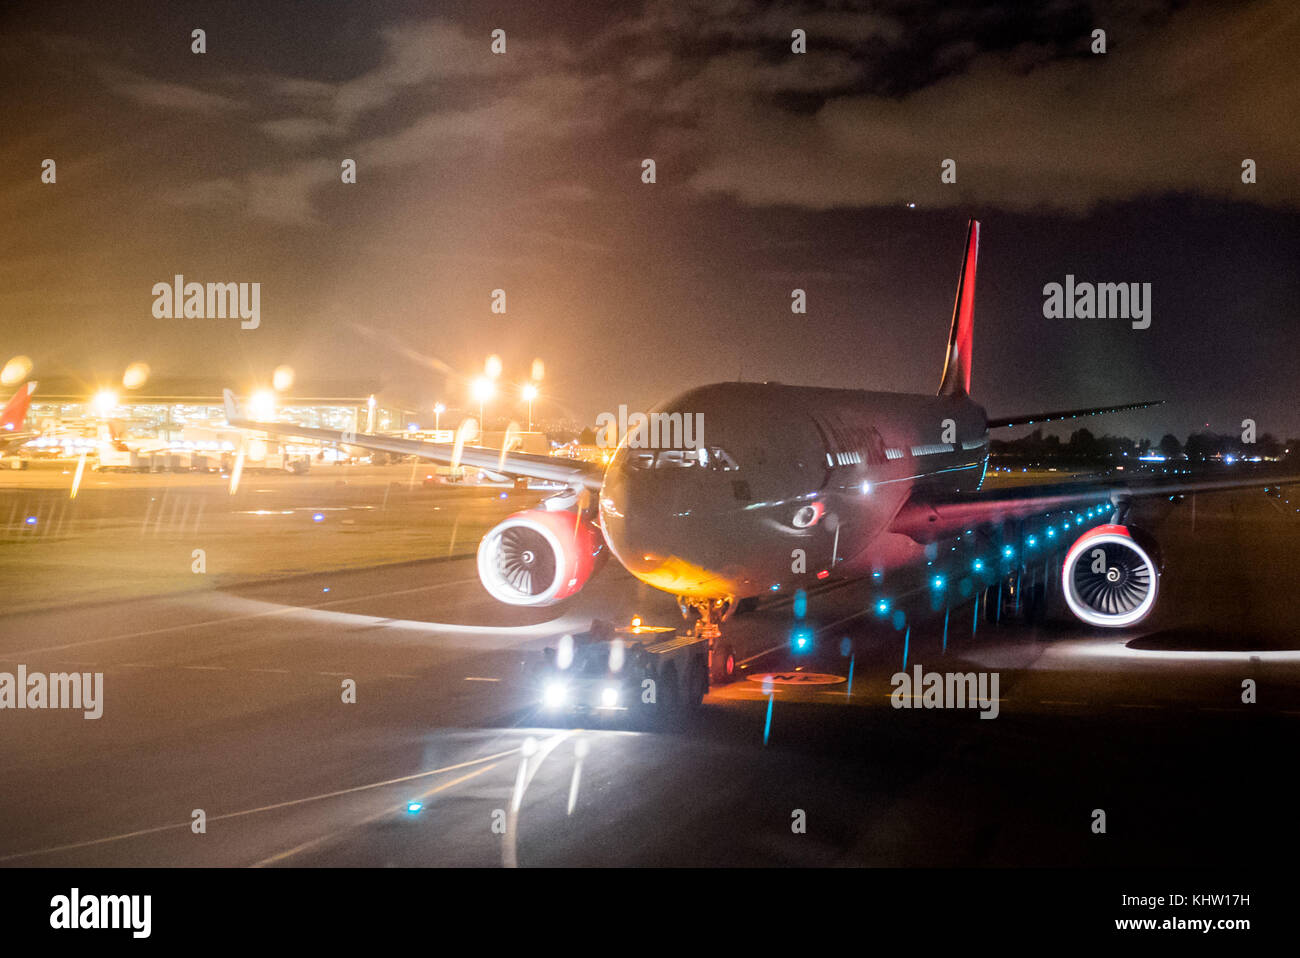 Un Airbus A330 de la compagnie aérienne avianca est remorqué vers le bas une voie de circulation à l'aéroport international El Dorado de Bogota, Colombie Banque D'Images